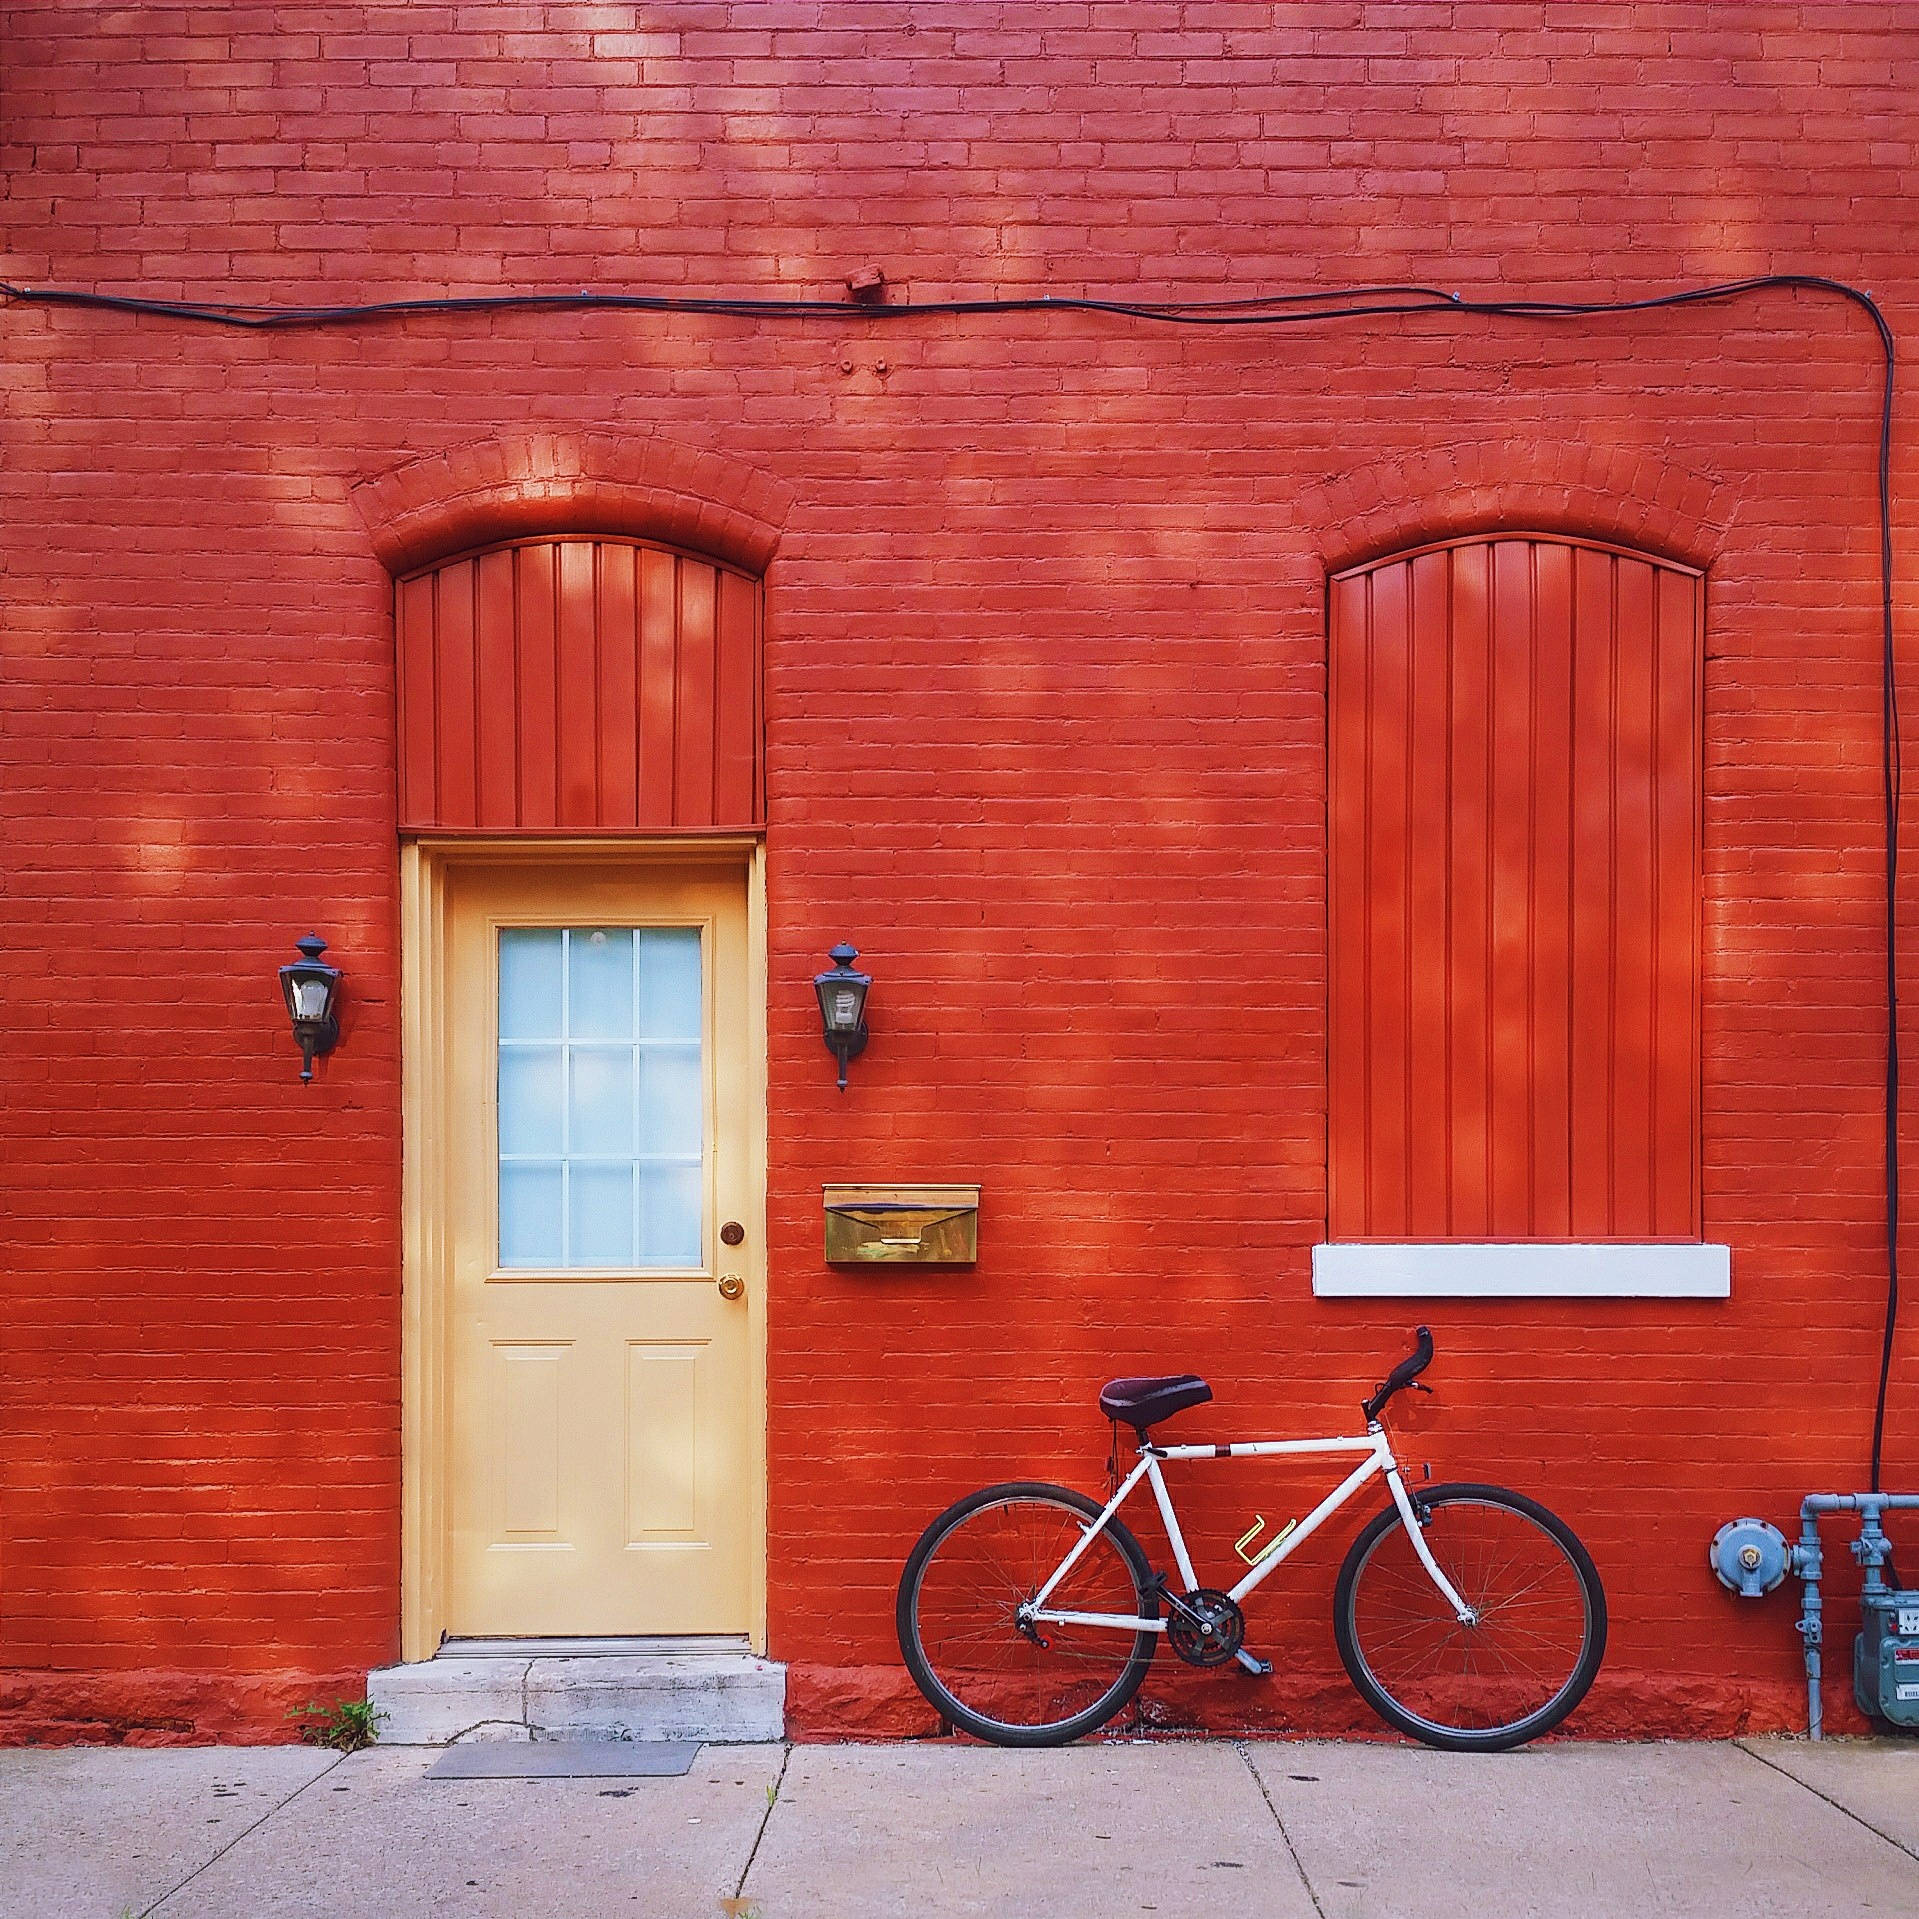 Impresionanteedificio Rojo Y Bicicleta. Fondo de pantalla